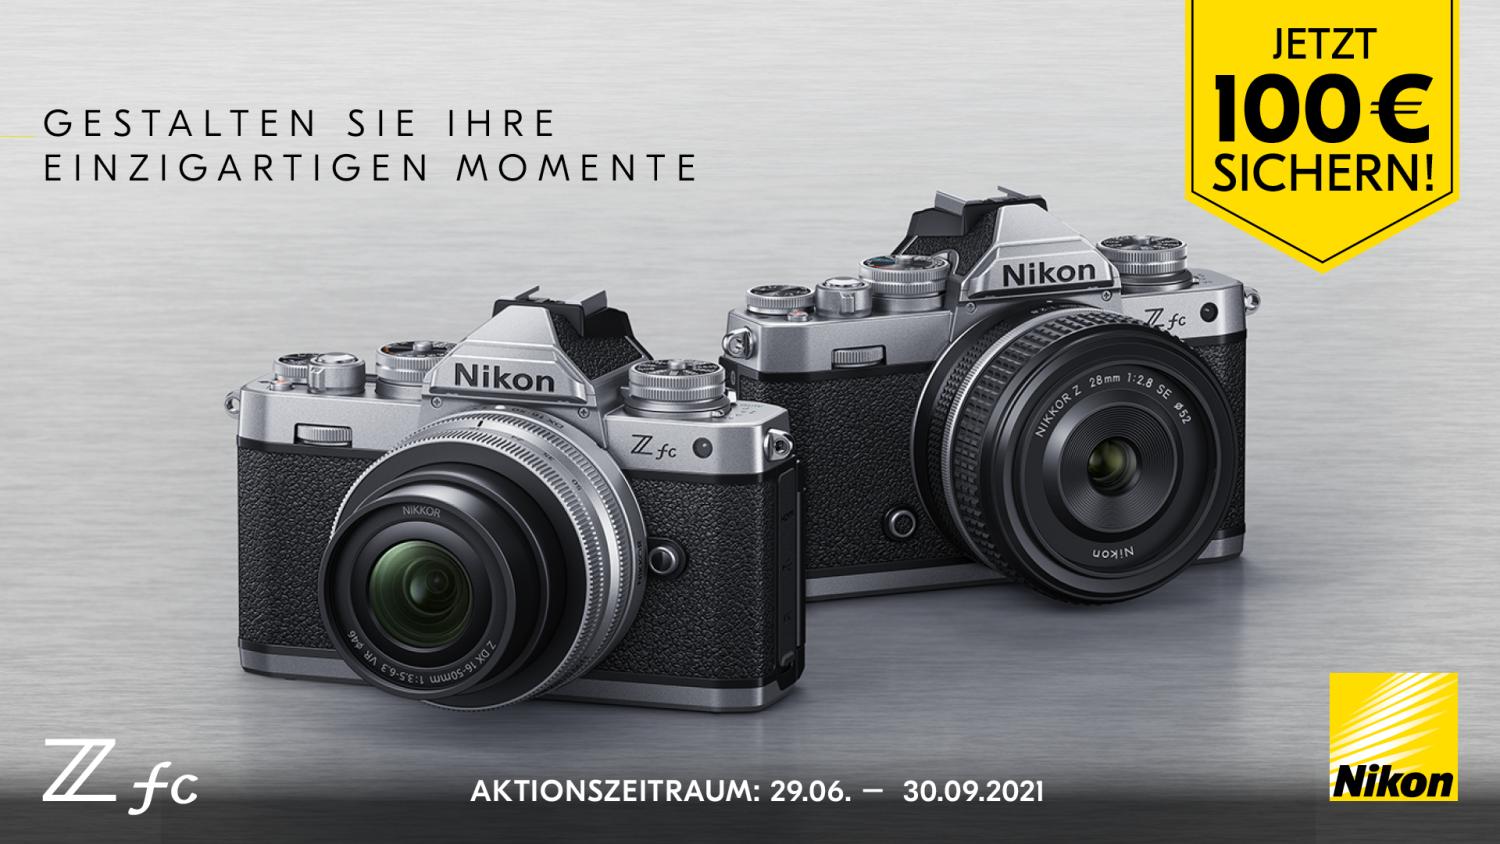 Nikon Z fc offiziell vorgestellt: so sieht die Kamera aus!